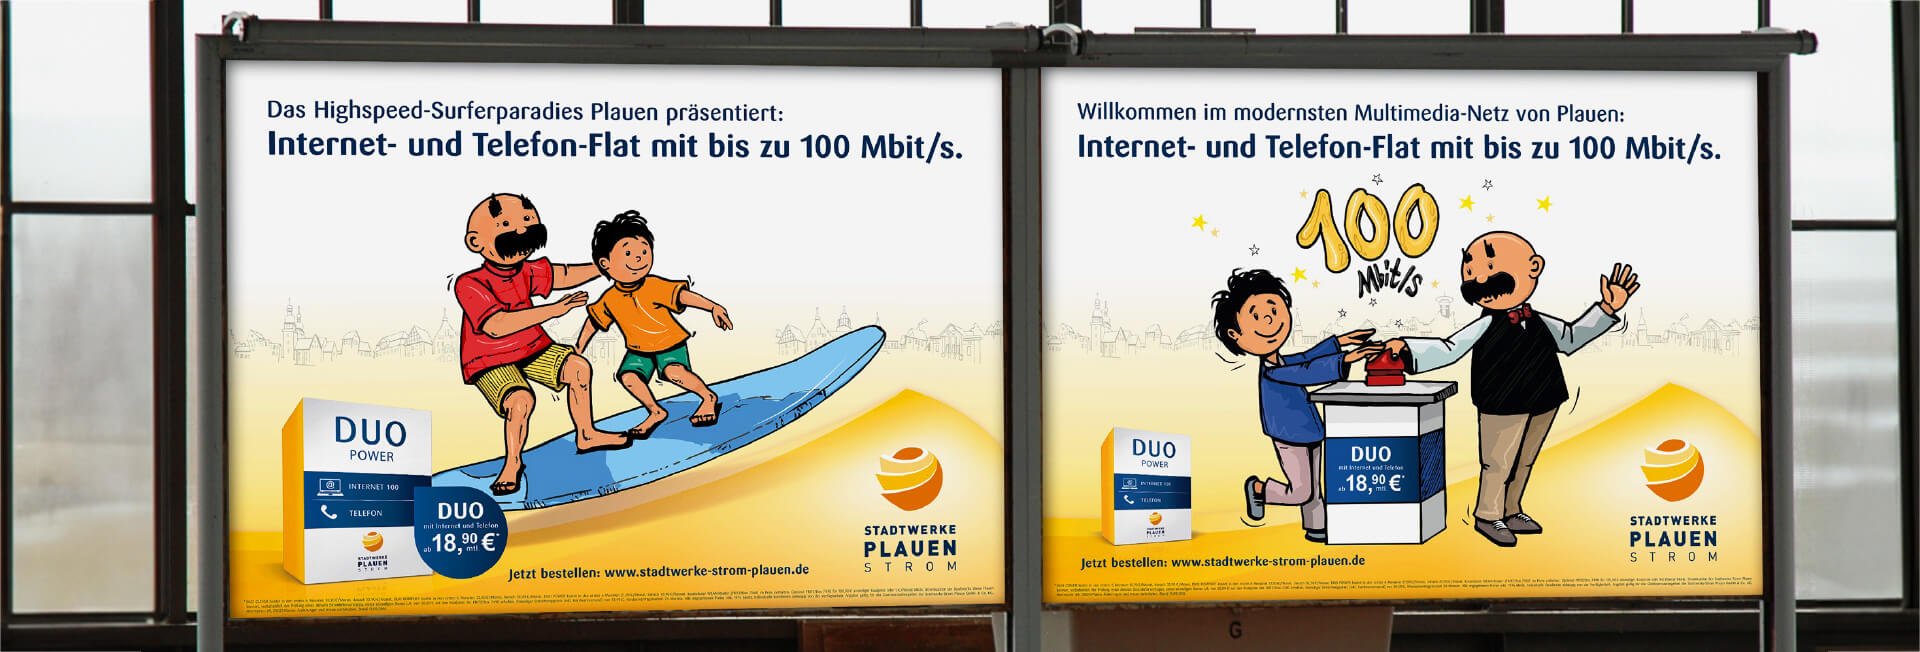 Arbeitsbeispiel von kakoii, der Agentur für Telekommunikationsmarketing, Kampagne für die Stadtwerke Plauen